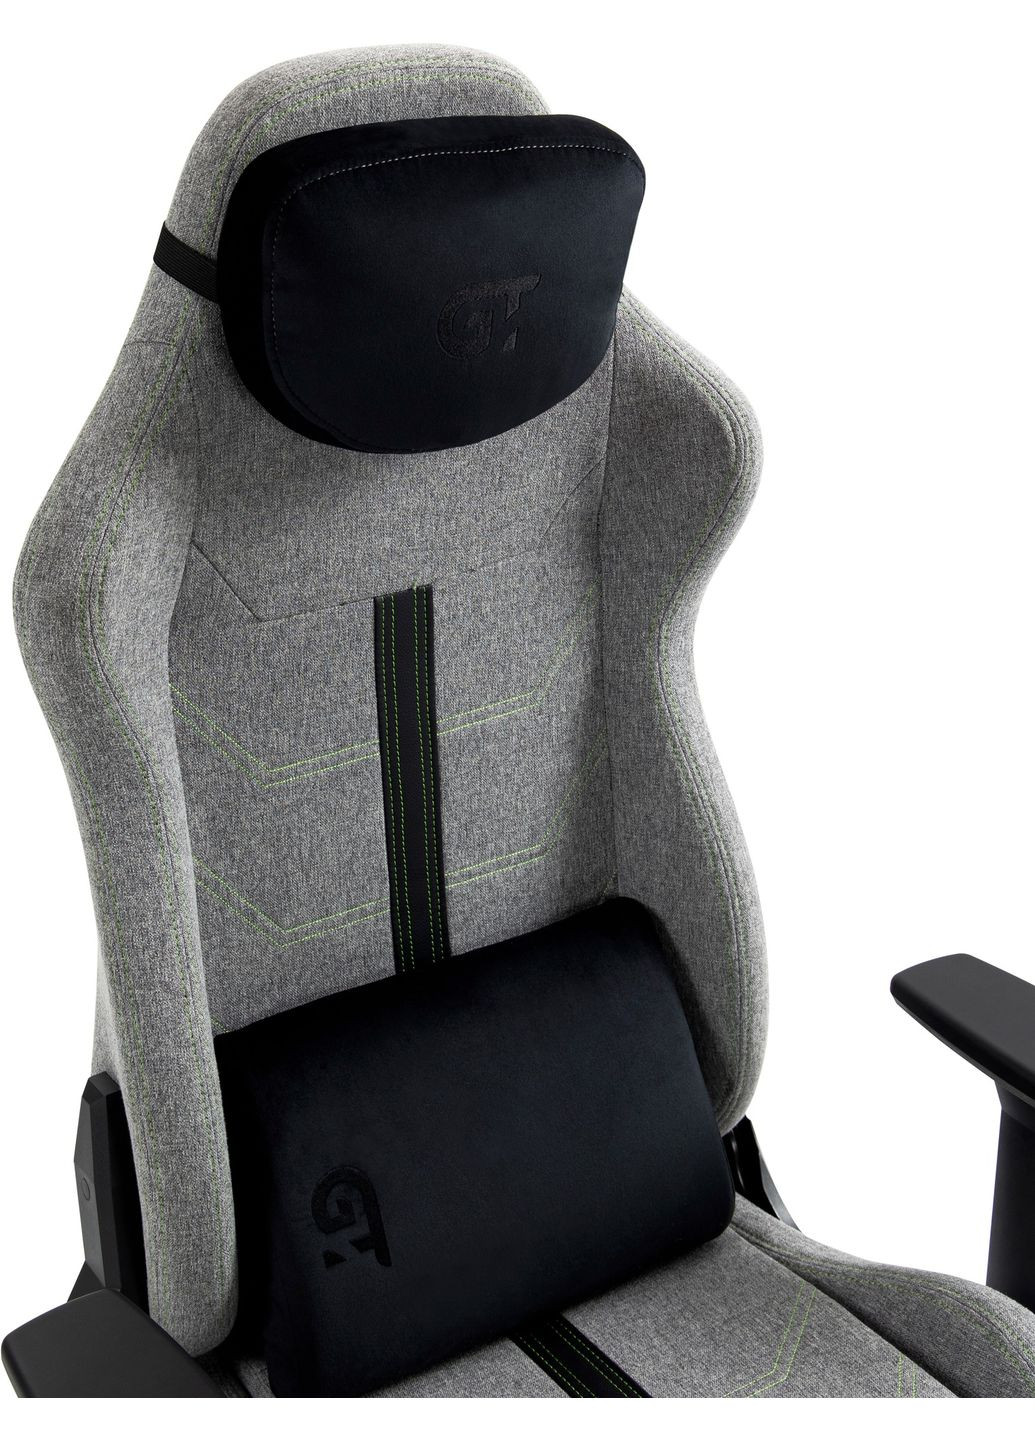 Геймерское кресло X2309 Fabric Gray GT Racer (282720255)